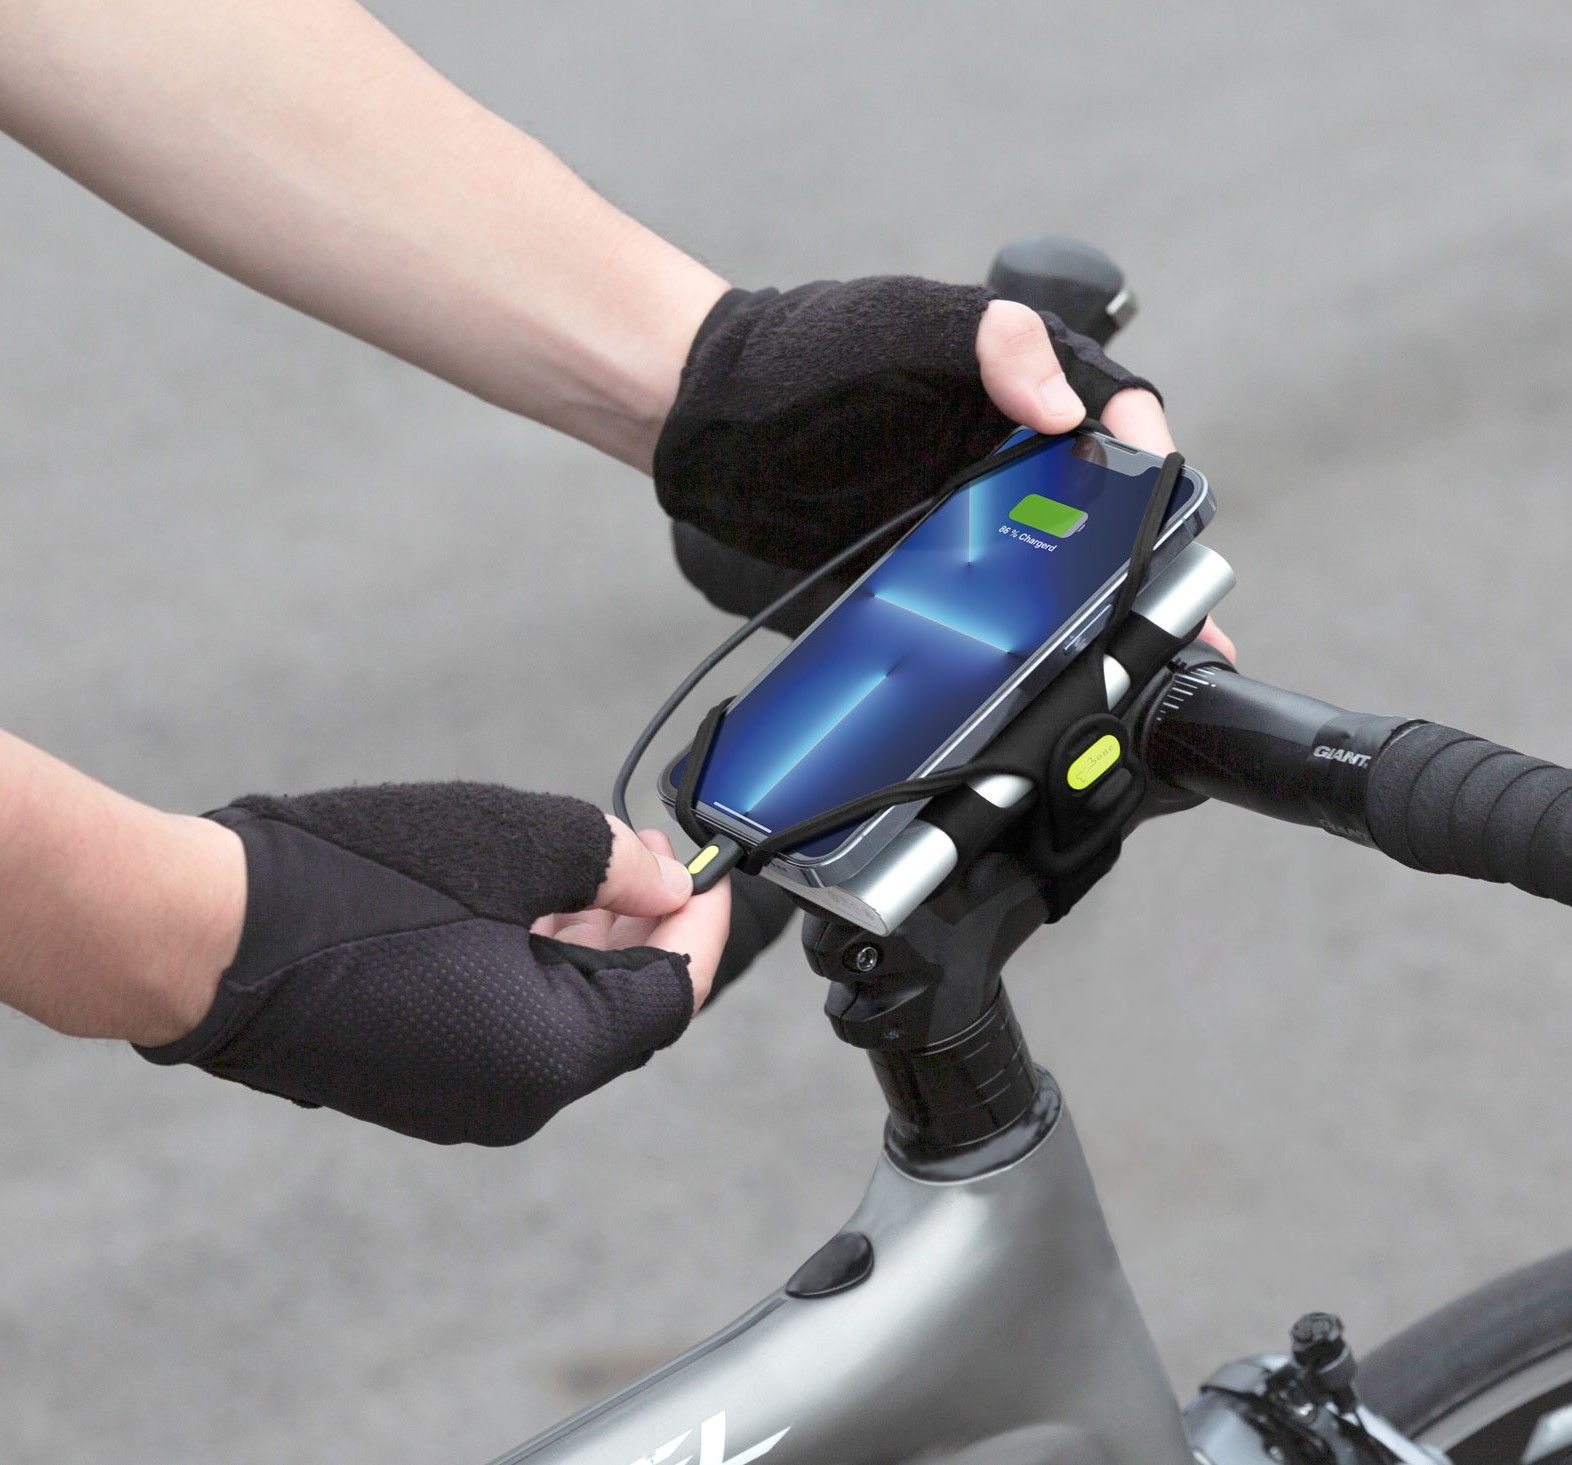  Bộ phụ kiện cố định điện thoại trên xe đạp Pro V2 